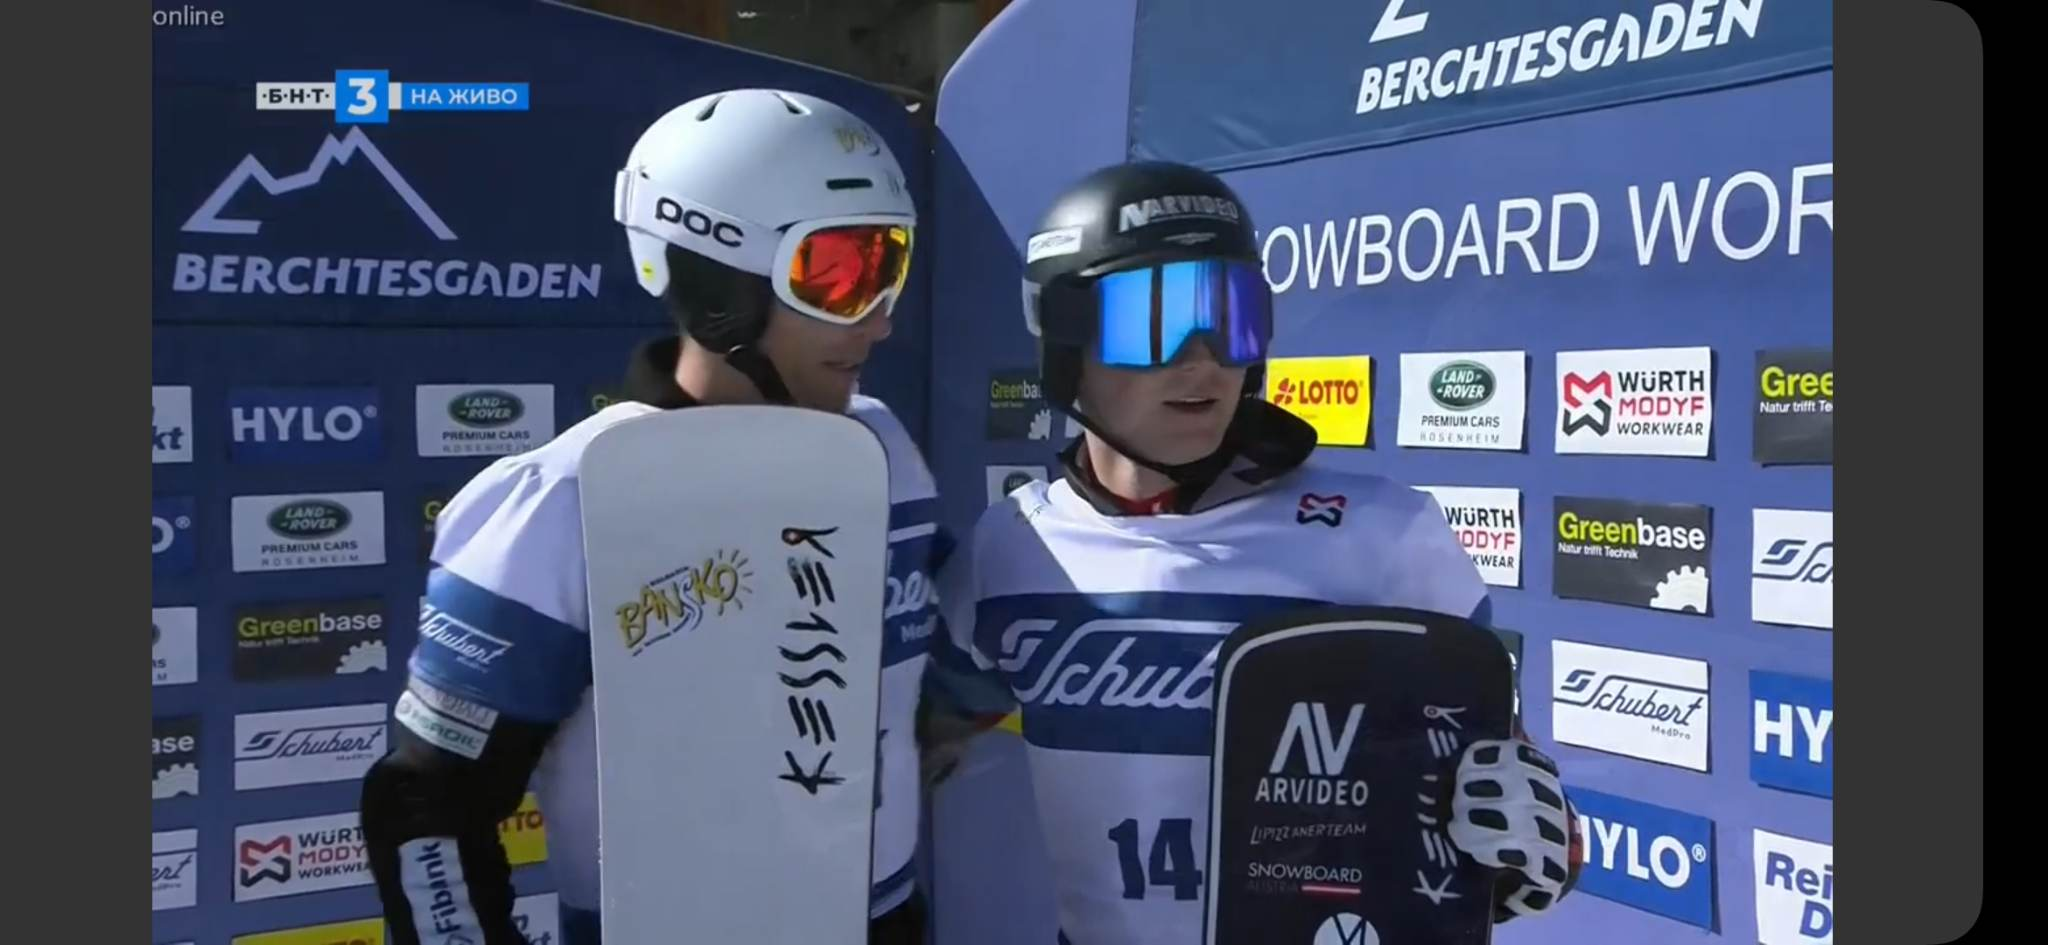 Радослав Янков седми в последния слалом от Световната купа по сноуборд